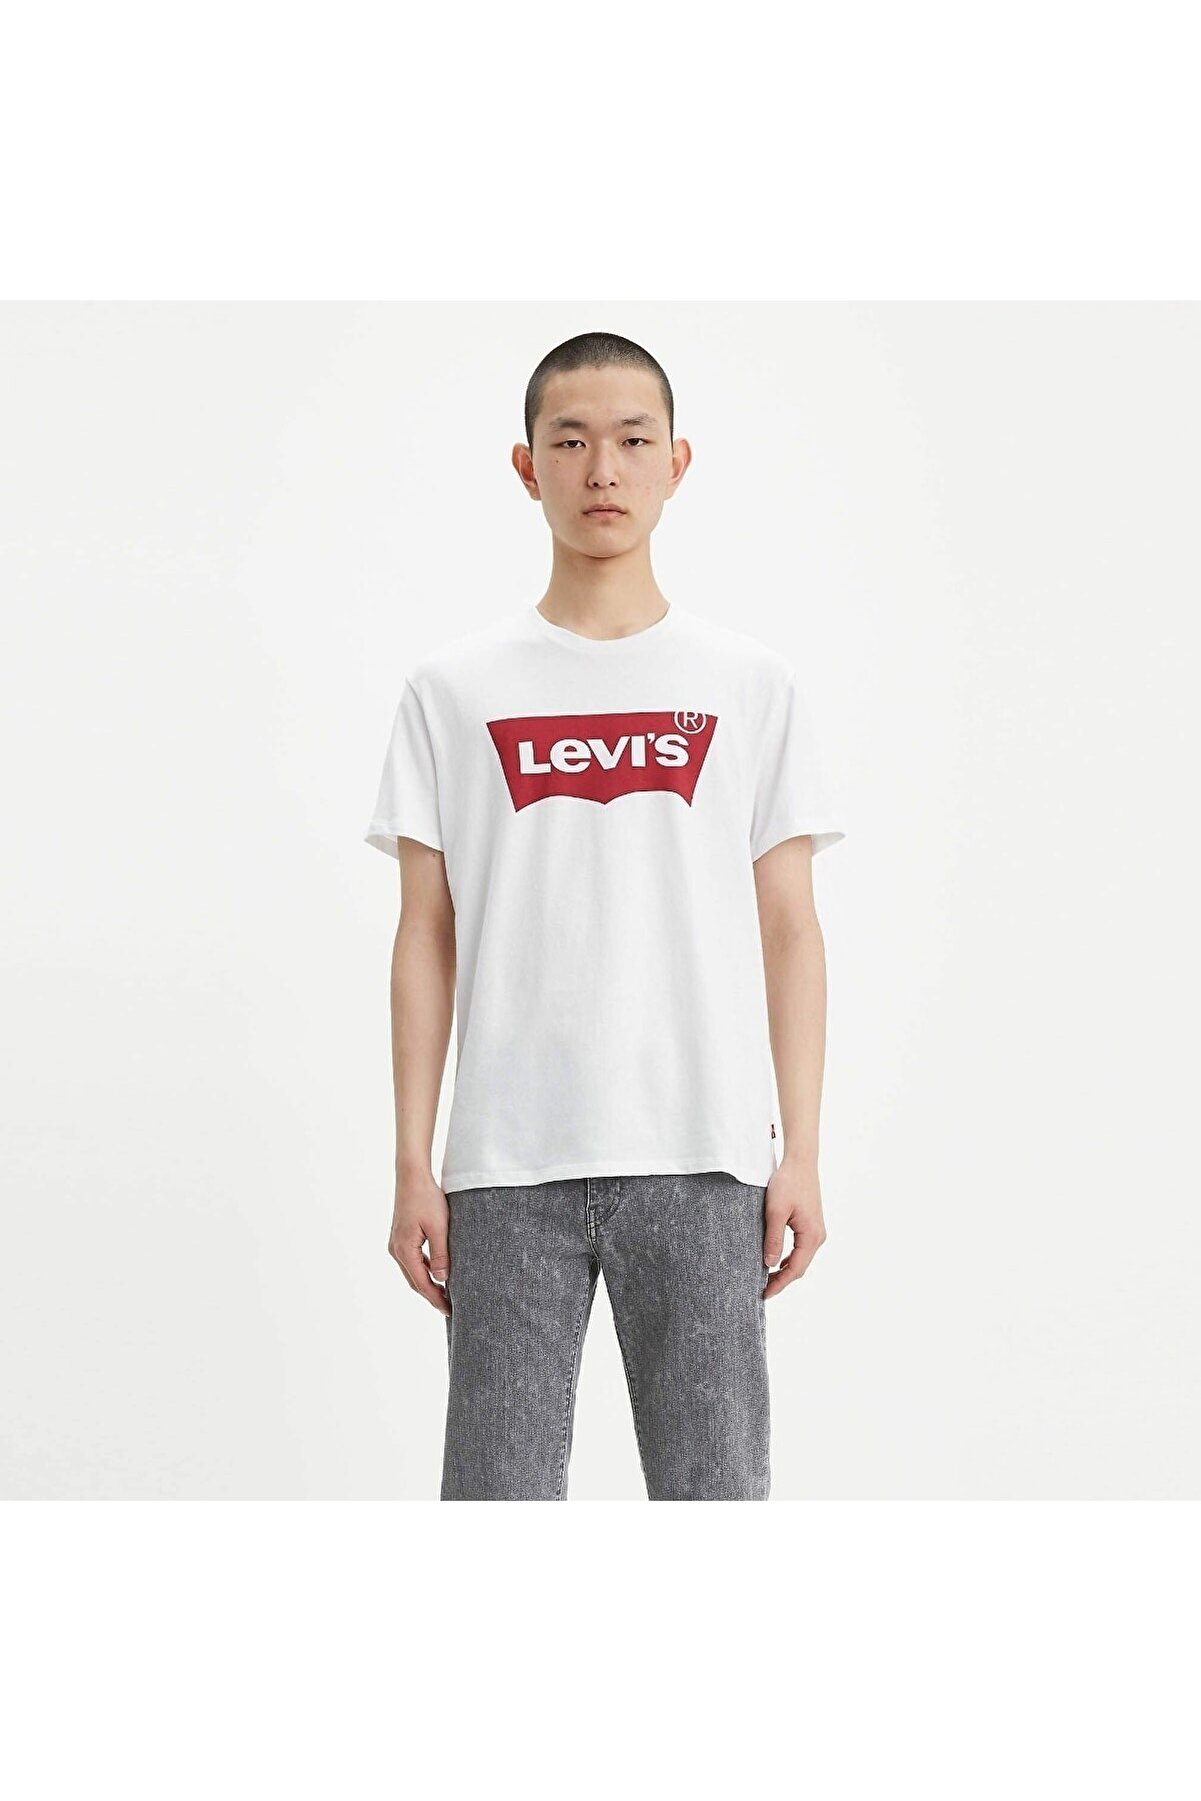 Levi's Erkek Batwing Kırmızı Logo T-shirt - 17783-0314